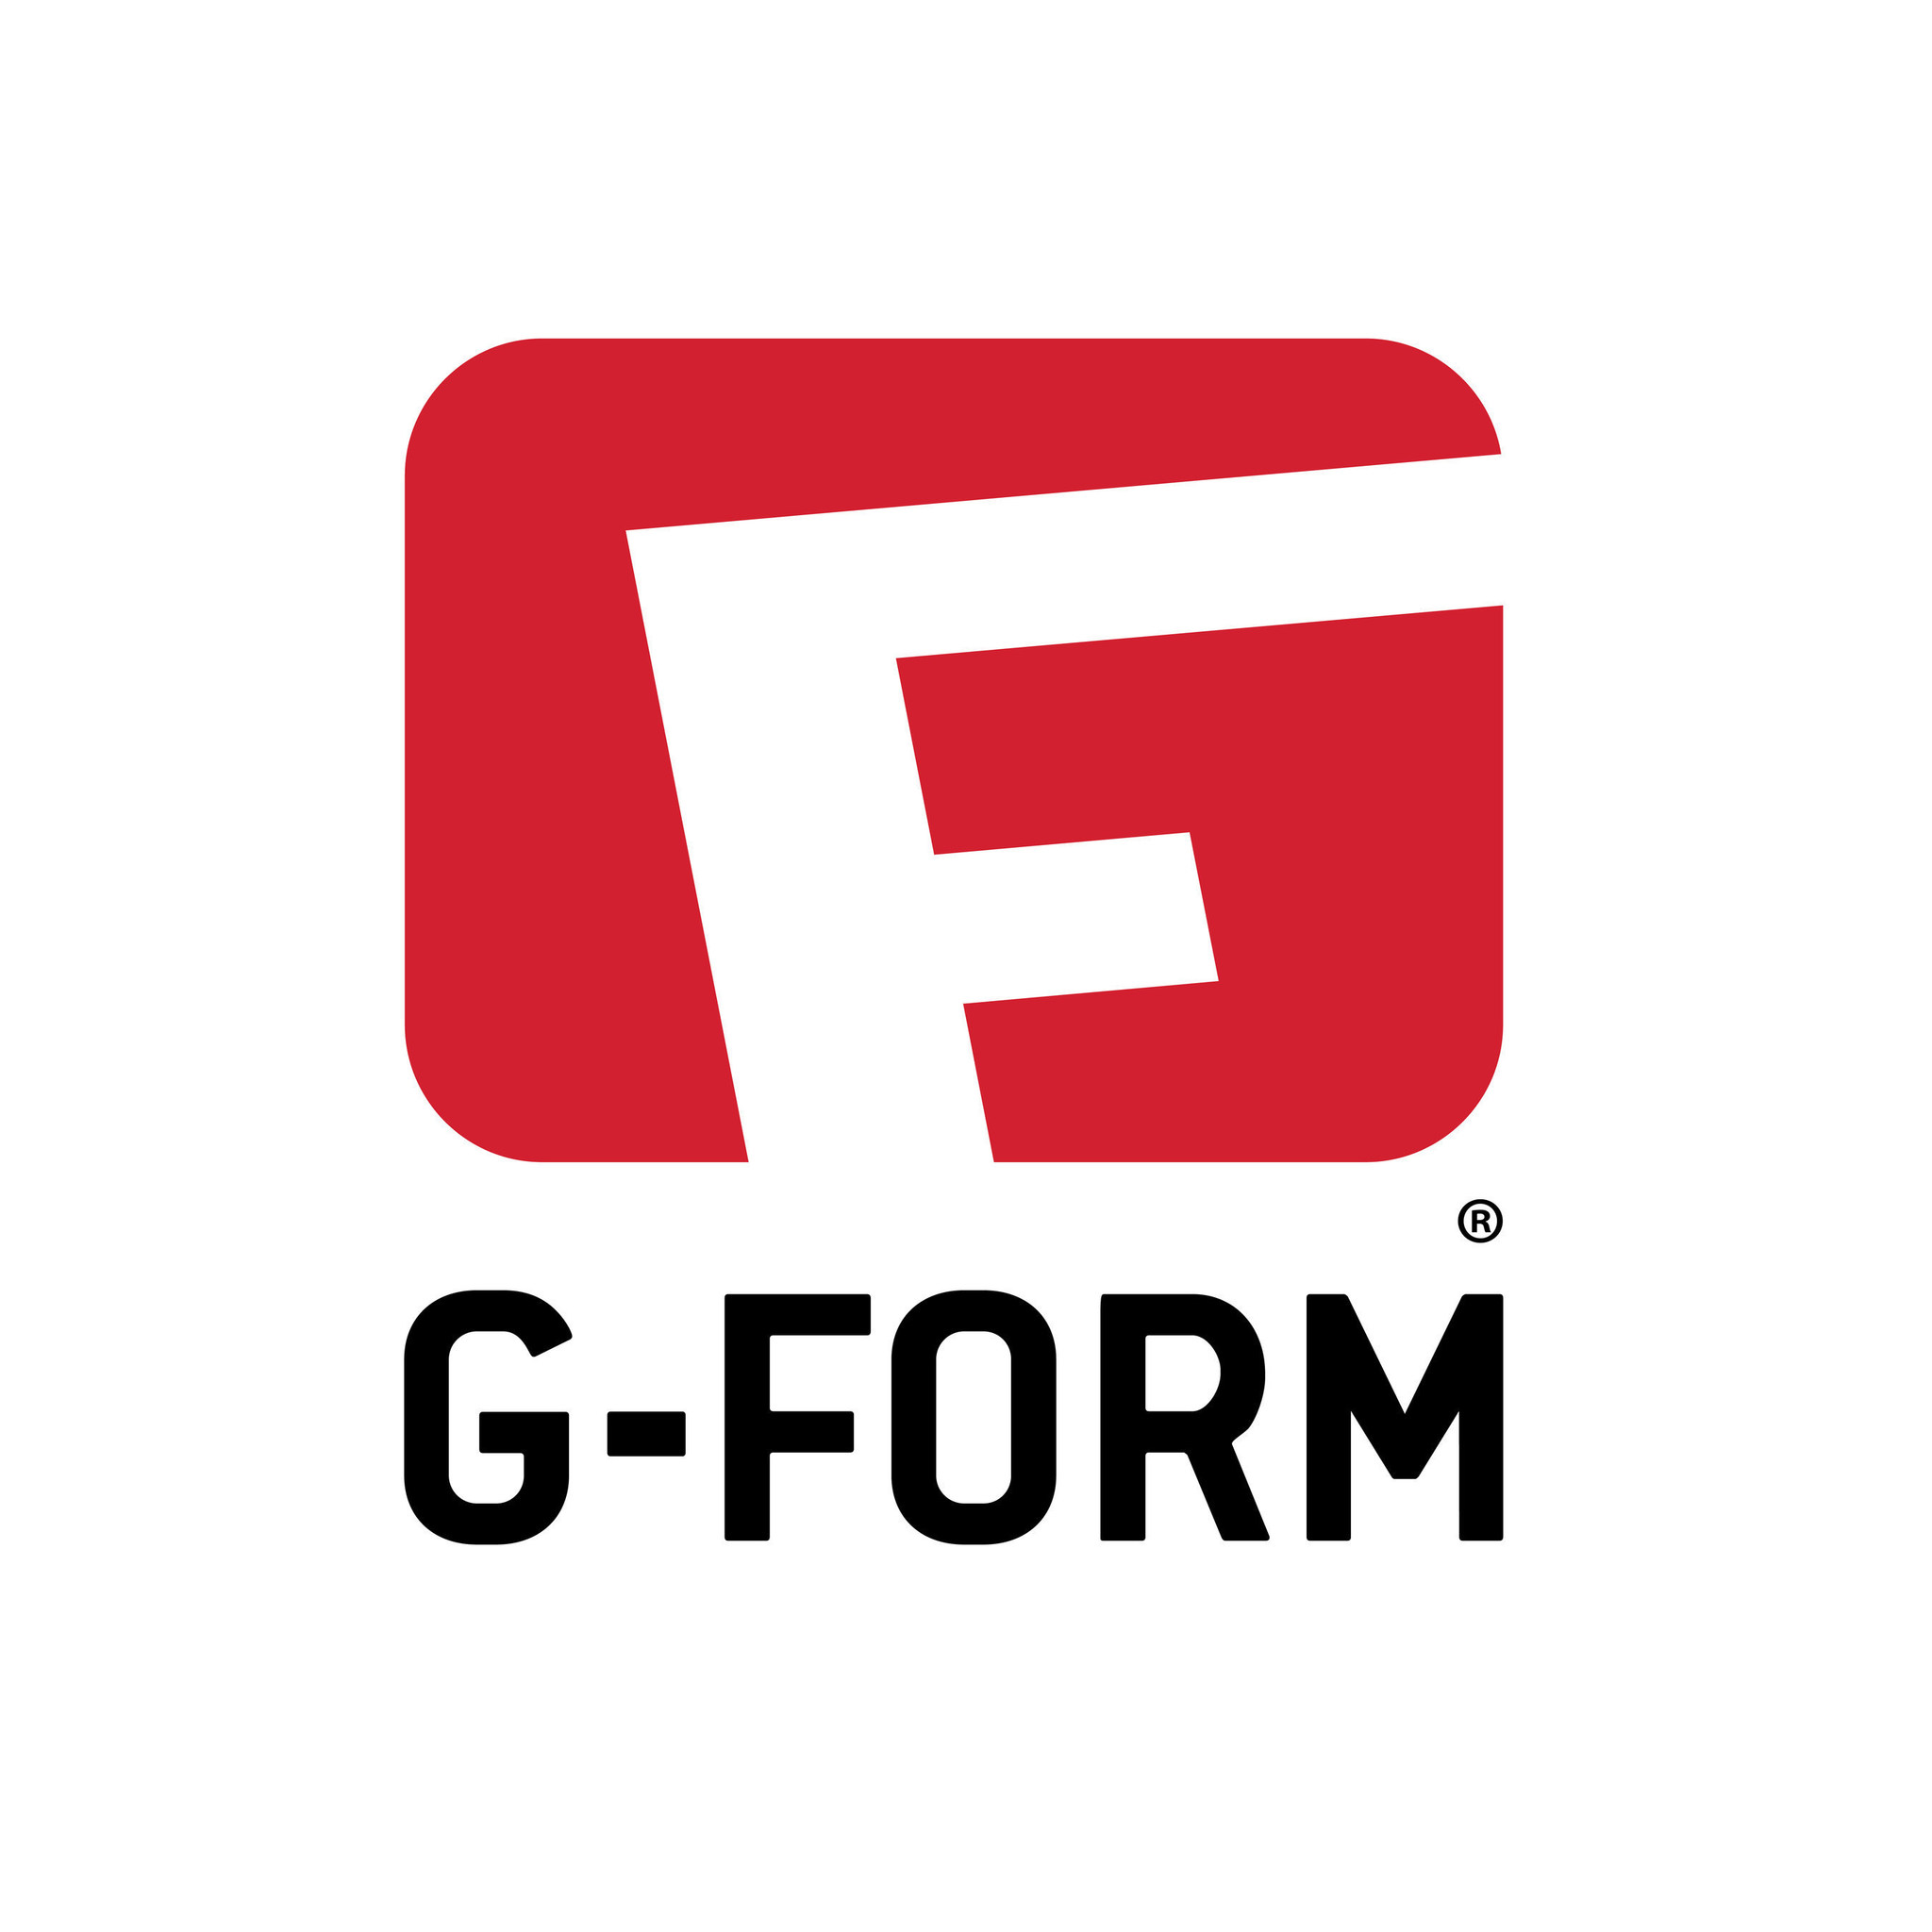 GForm купить в интернетмагазине по лучшей цене